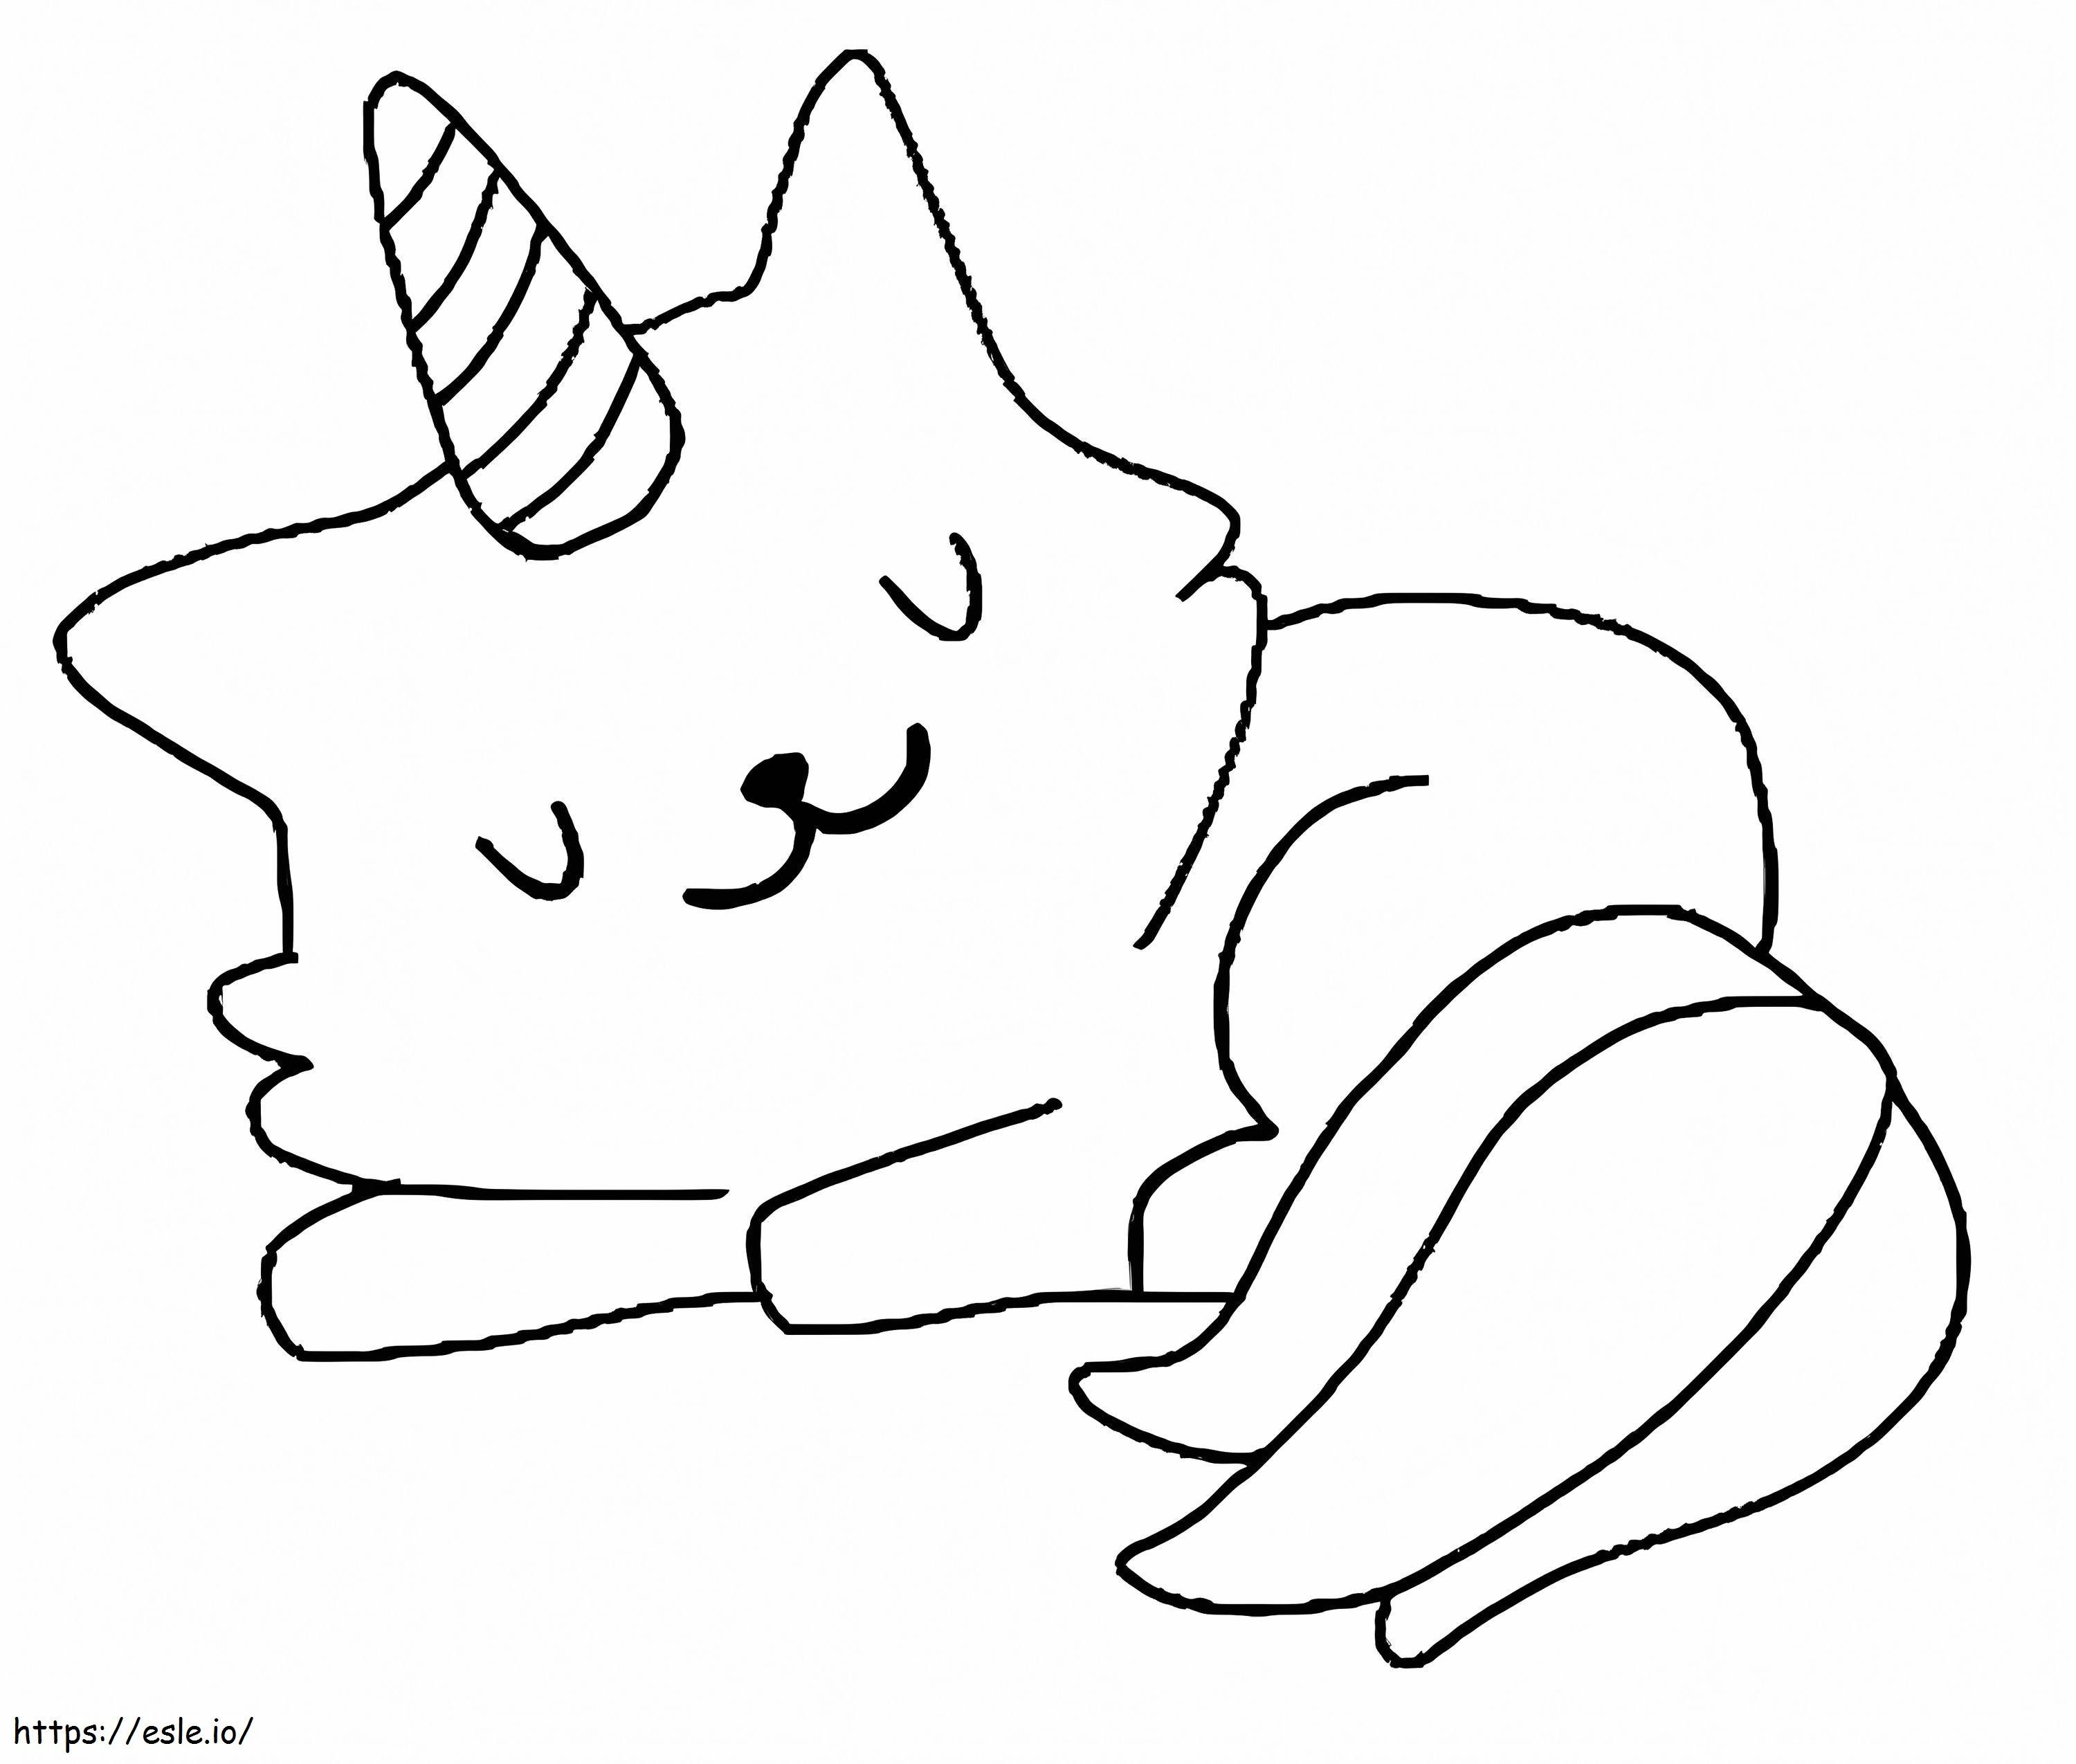 Jednorożec Kot śpi kolorowanka